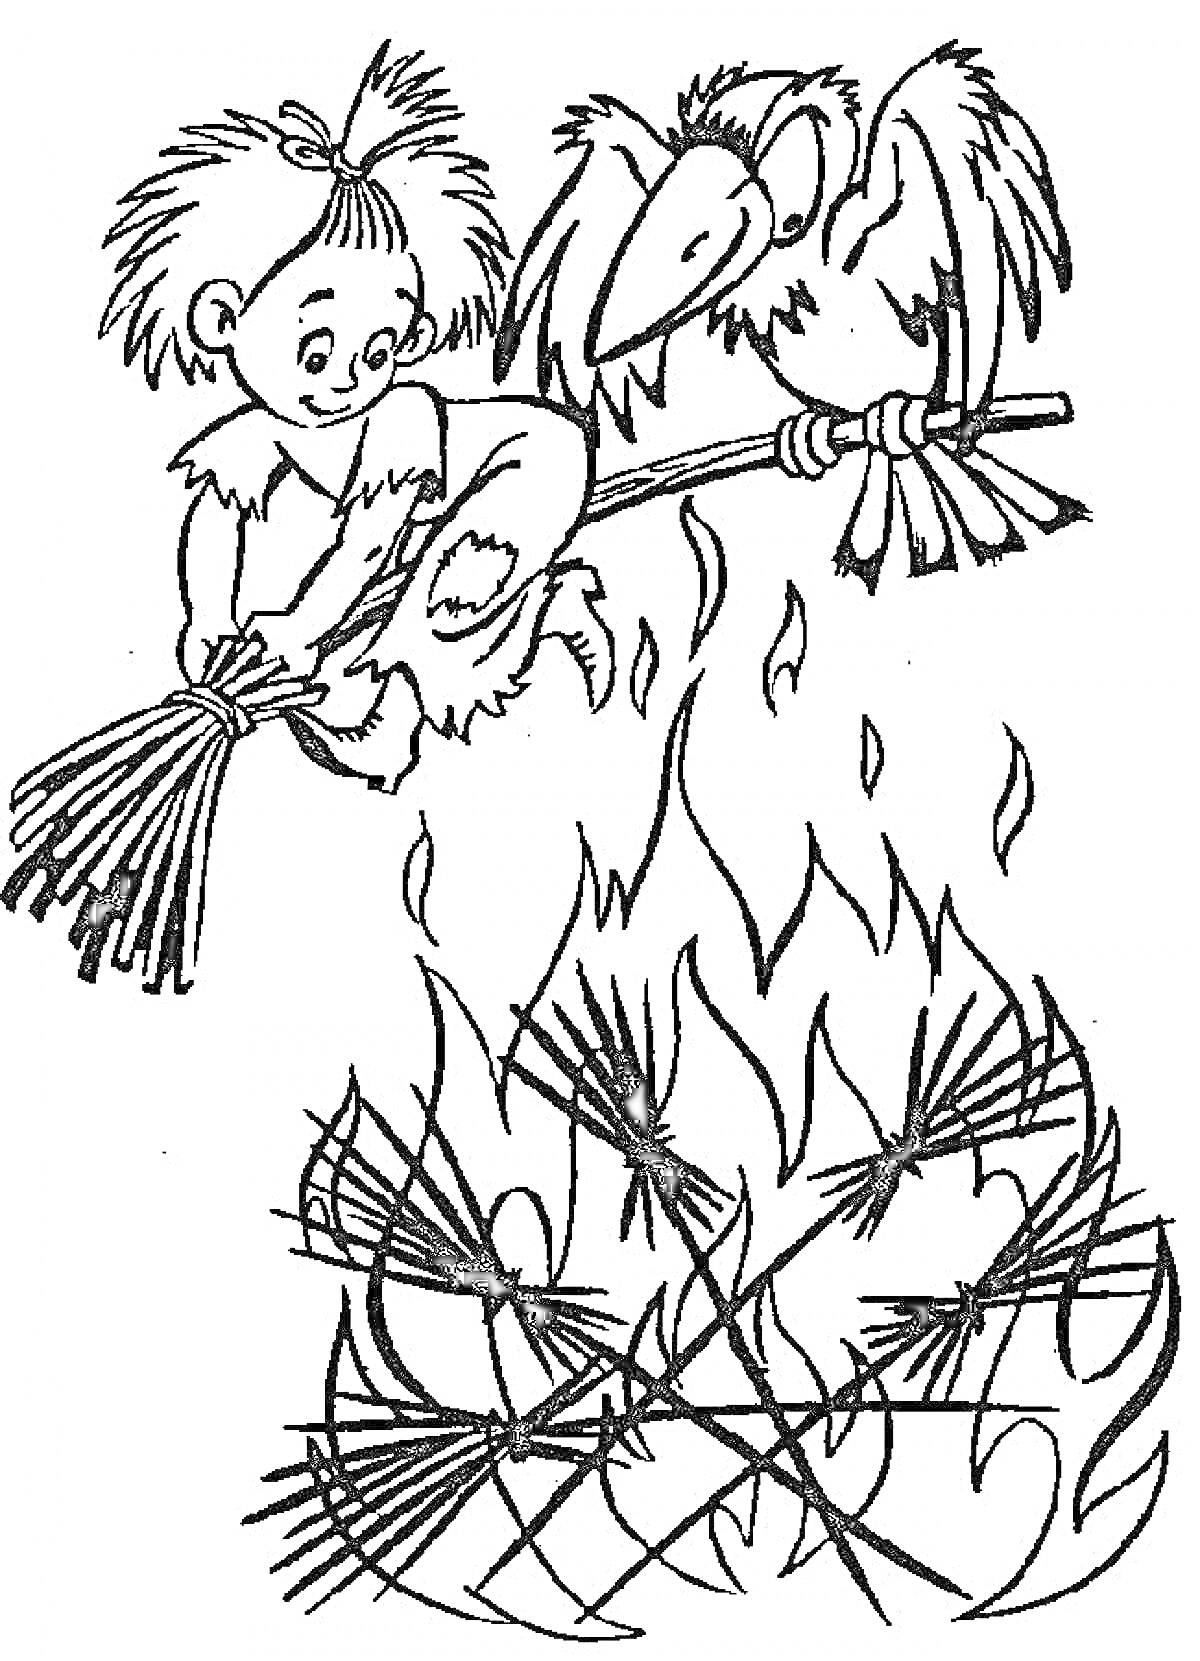 Мальчик и ворона сидят на ветке над костром